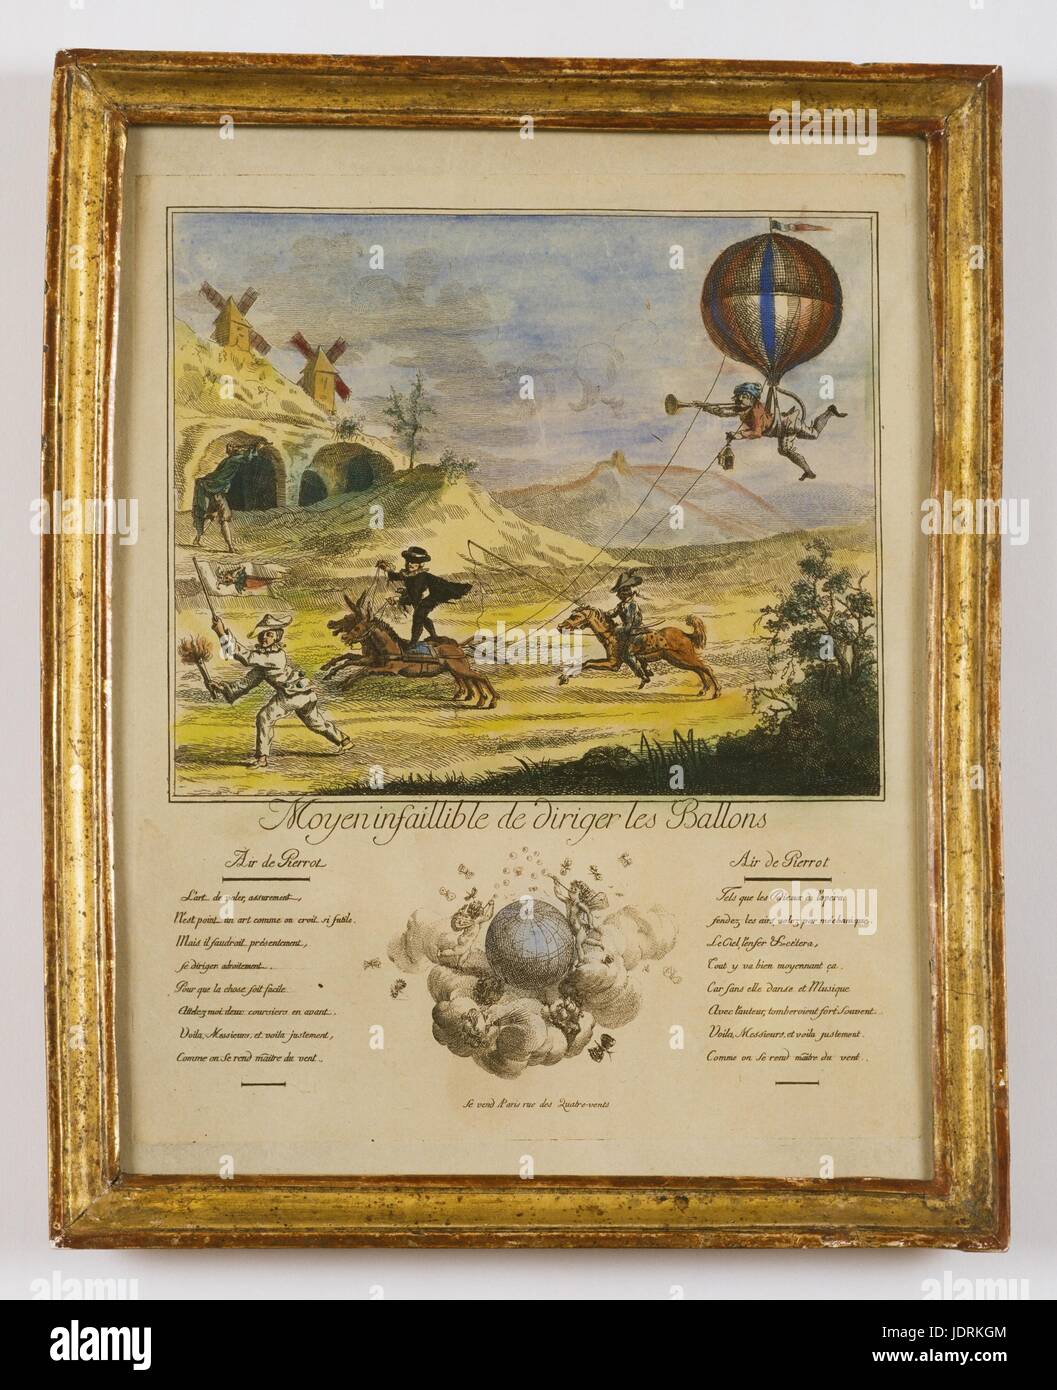 L'infaillible moyen de ballons de direction gravure couleur avec cadre (36  x 29 cm) Muller-Quênot Collection Air de Pierrot : Très certainement l'art  de voler n'est pas un tel art trivial mais